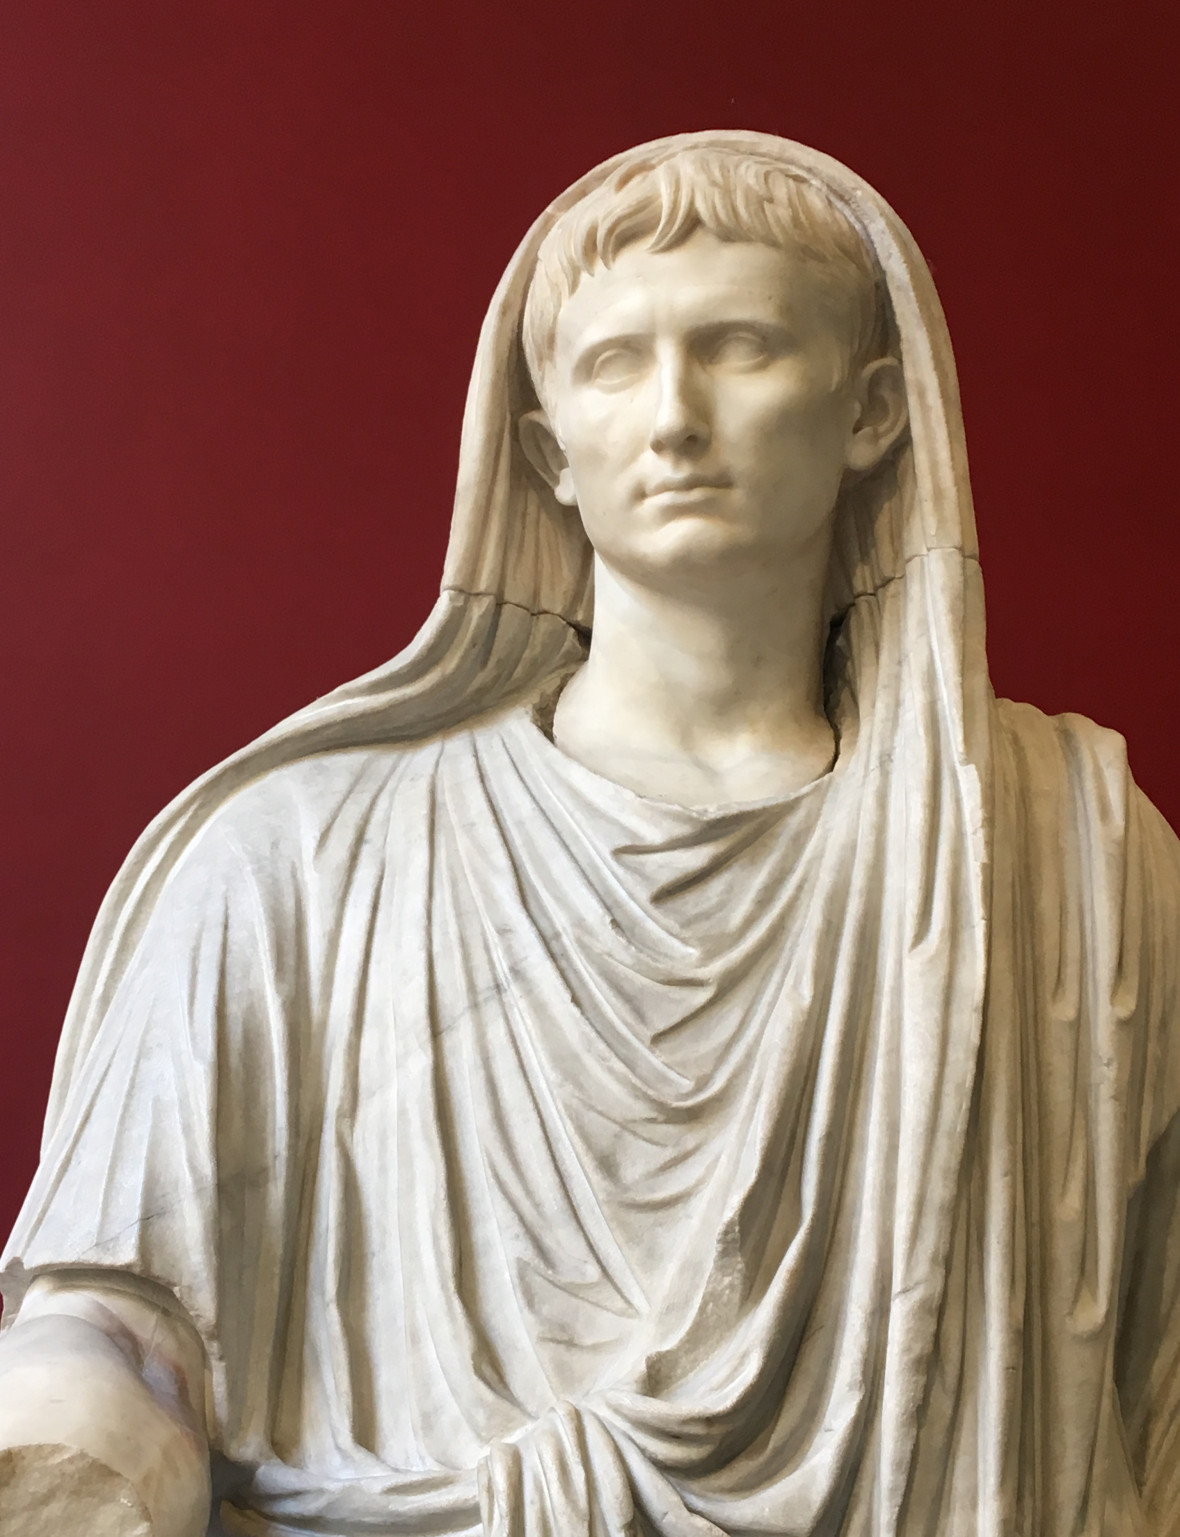 Augustus császár mint pontifex maximus (Palazzo Massimo, Róma). Neve mai napig naptárunk nyolcadik hónapja, papi címe pedig beépült a pápai titulusba.